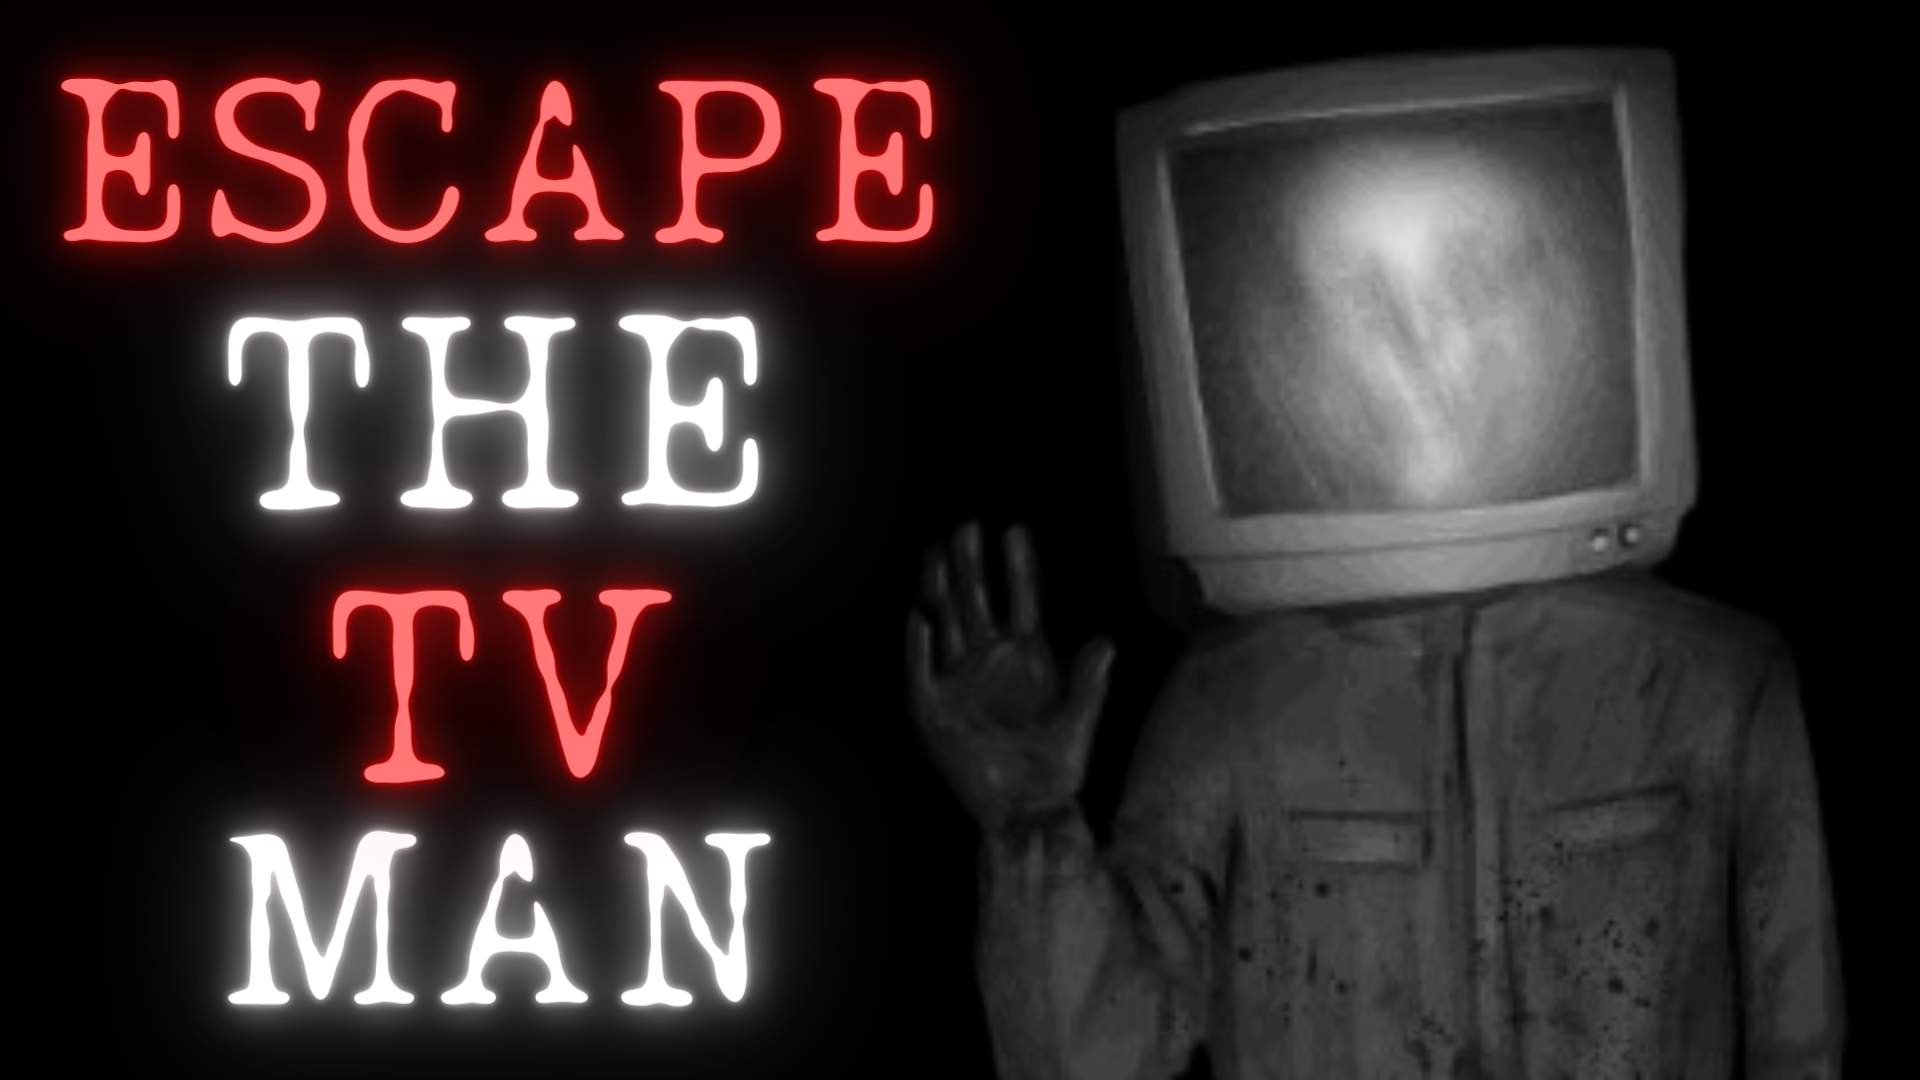 ESCAPE THE TV MAN